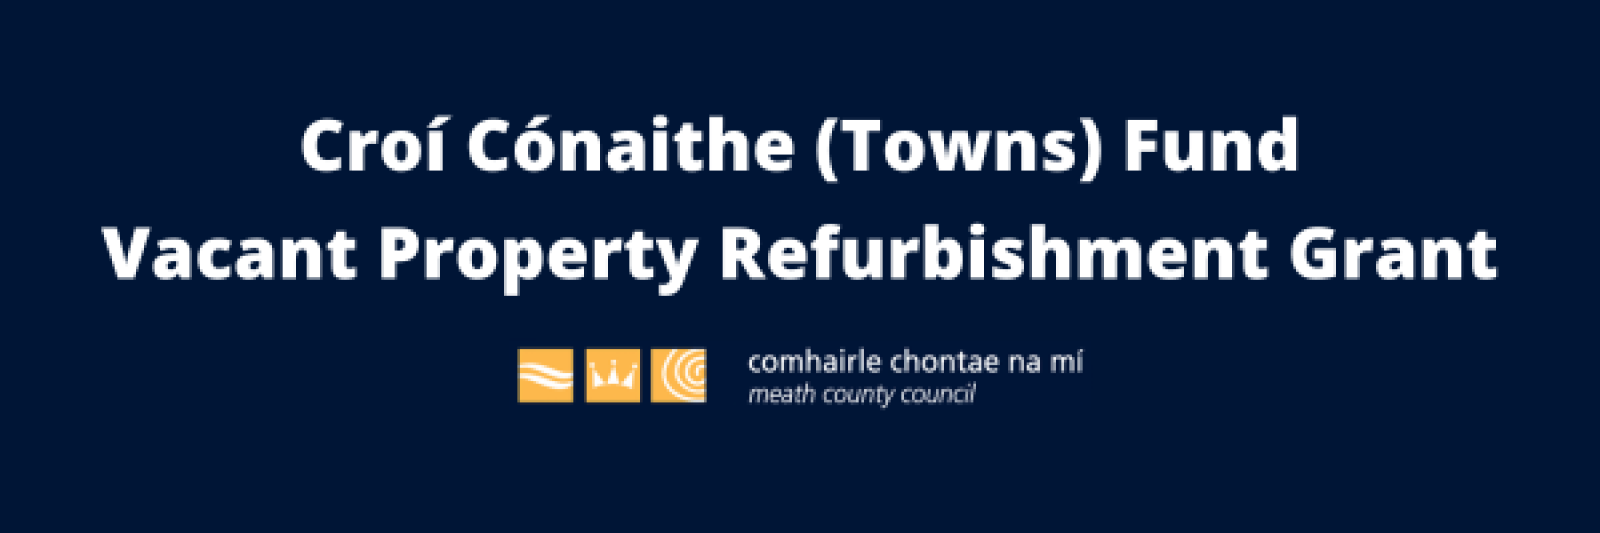 Croí Cónaithe (Towns) Fund - Vacant Property Grant